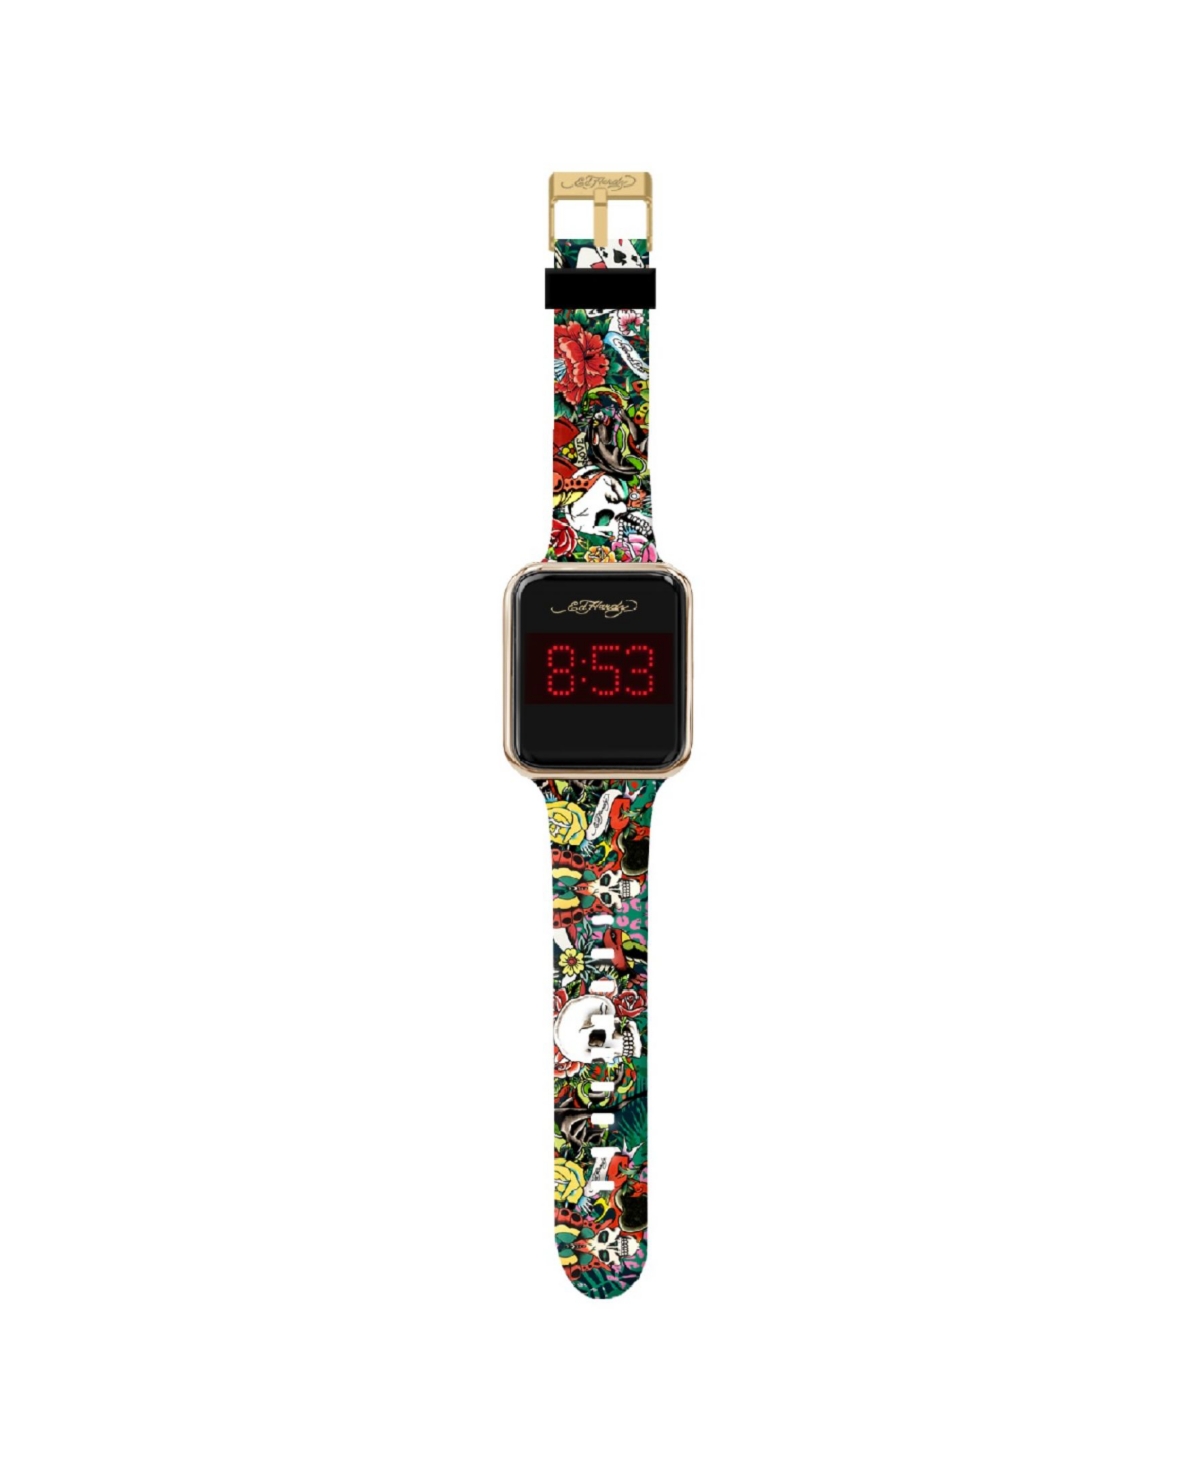 Men's Multicolor Silicone Strap Watch 45mm - Black, Multicolor